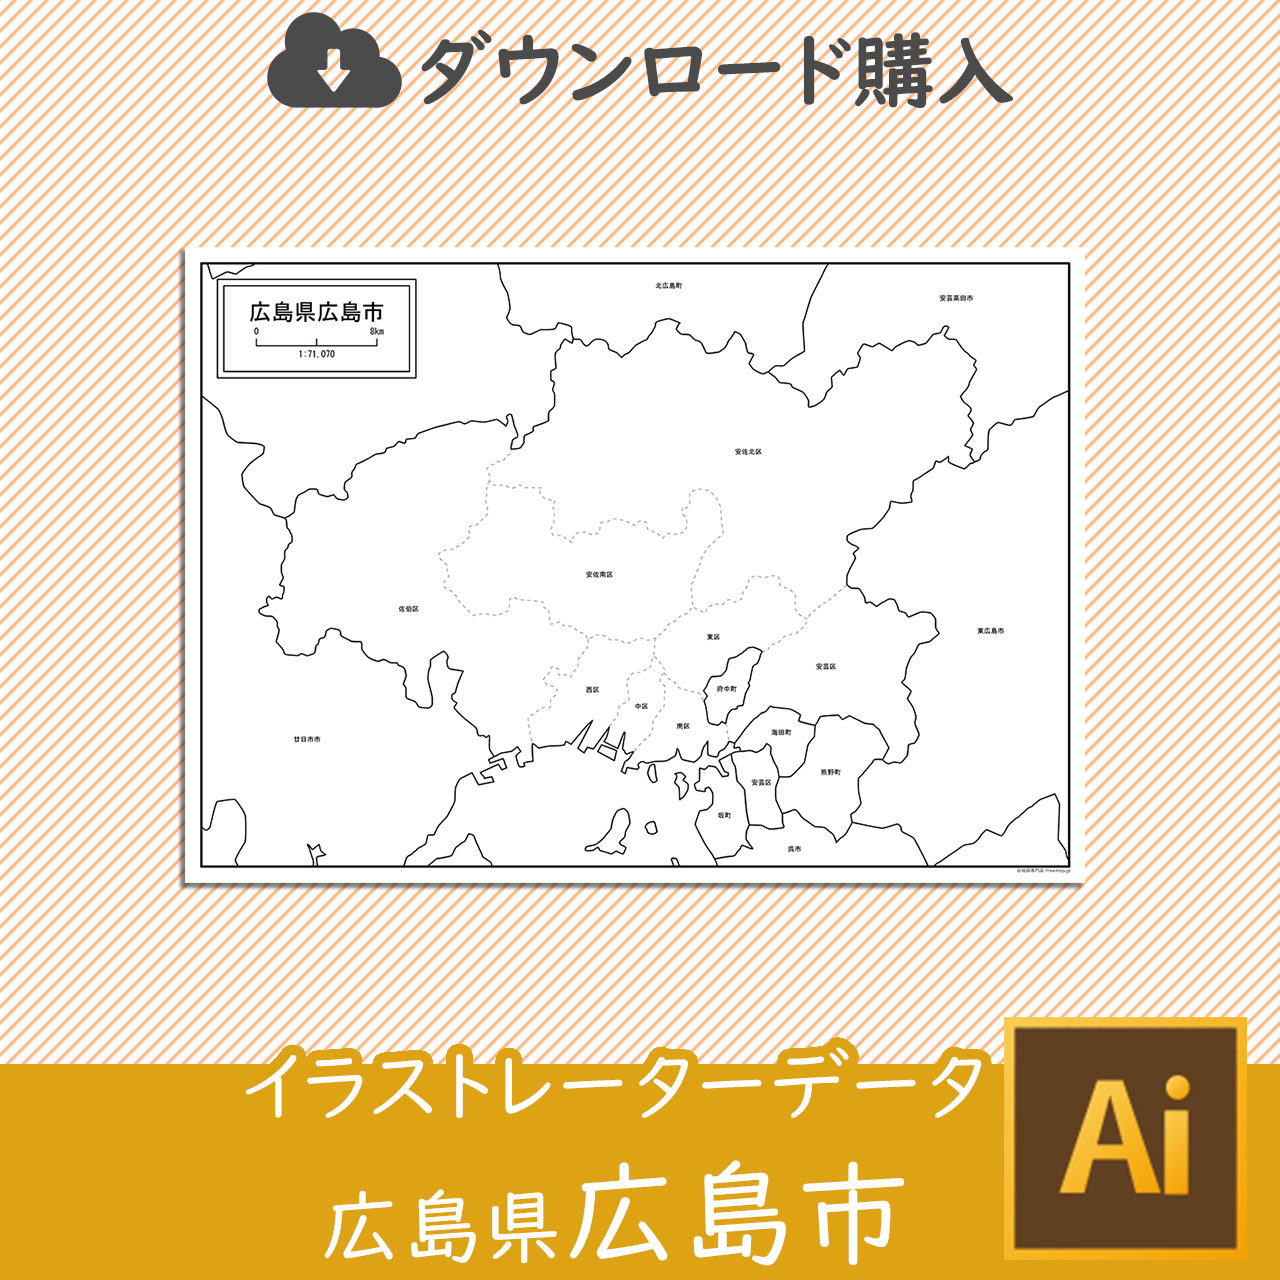 広島市のaiデータのサムネイル画像